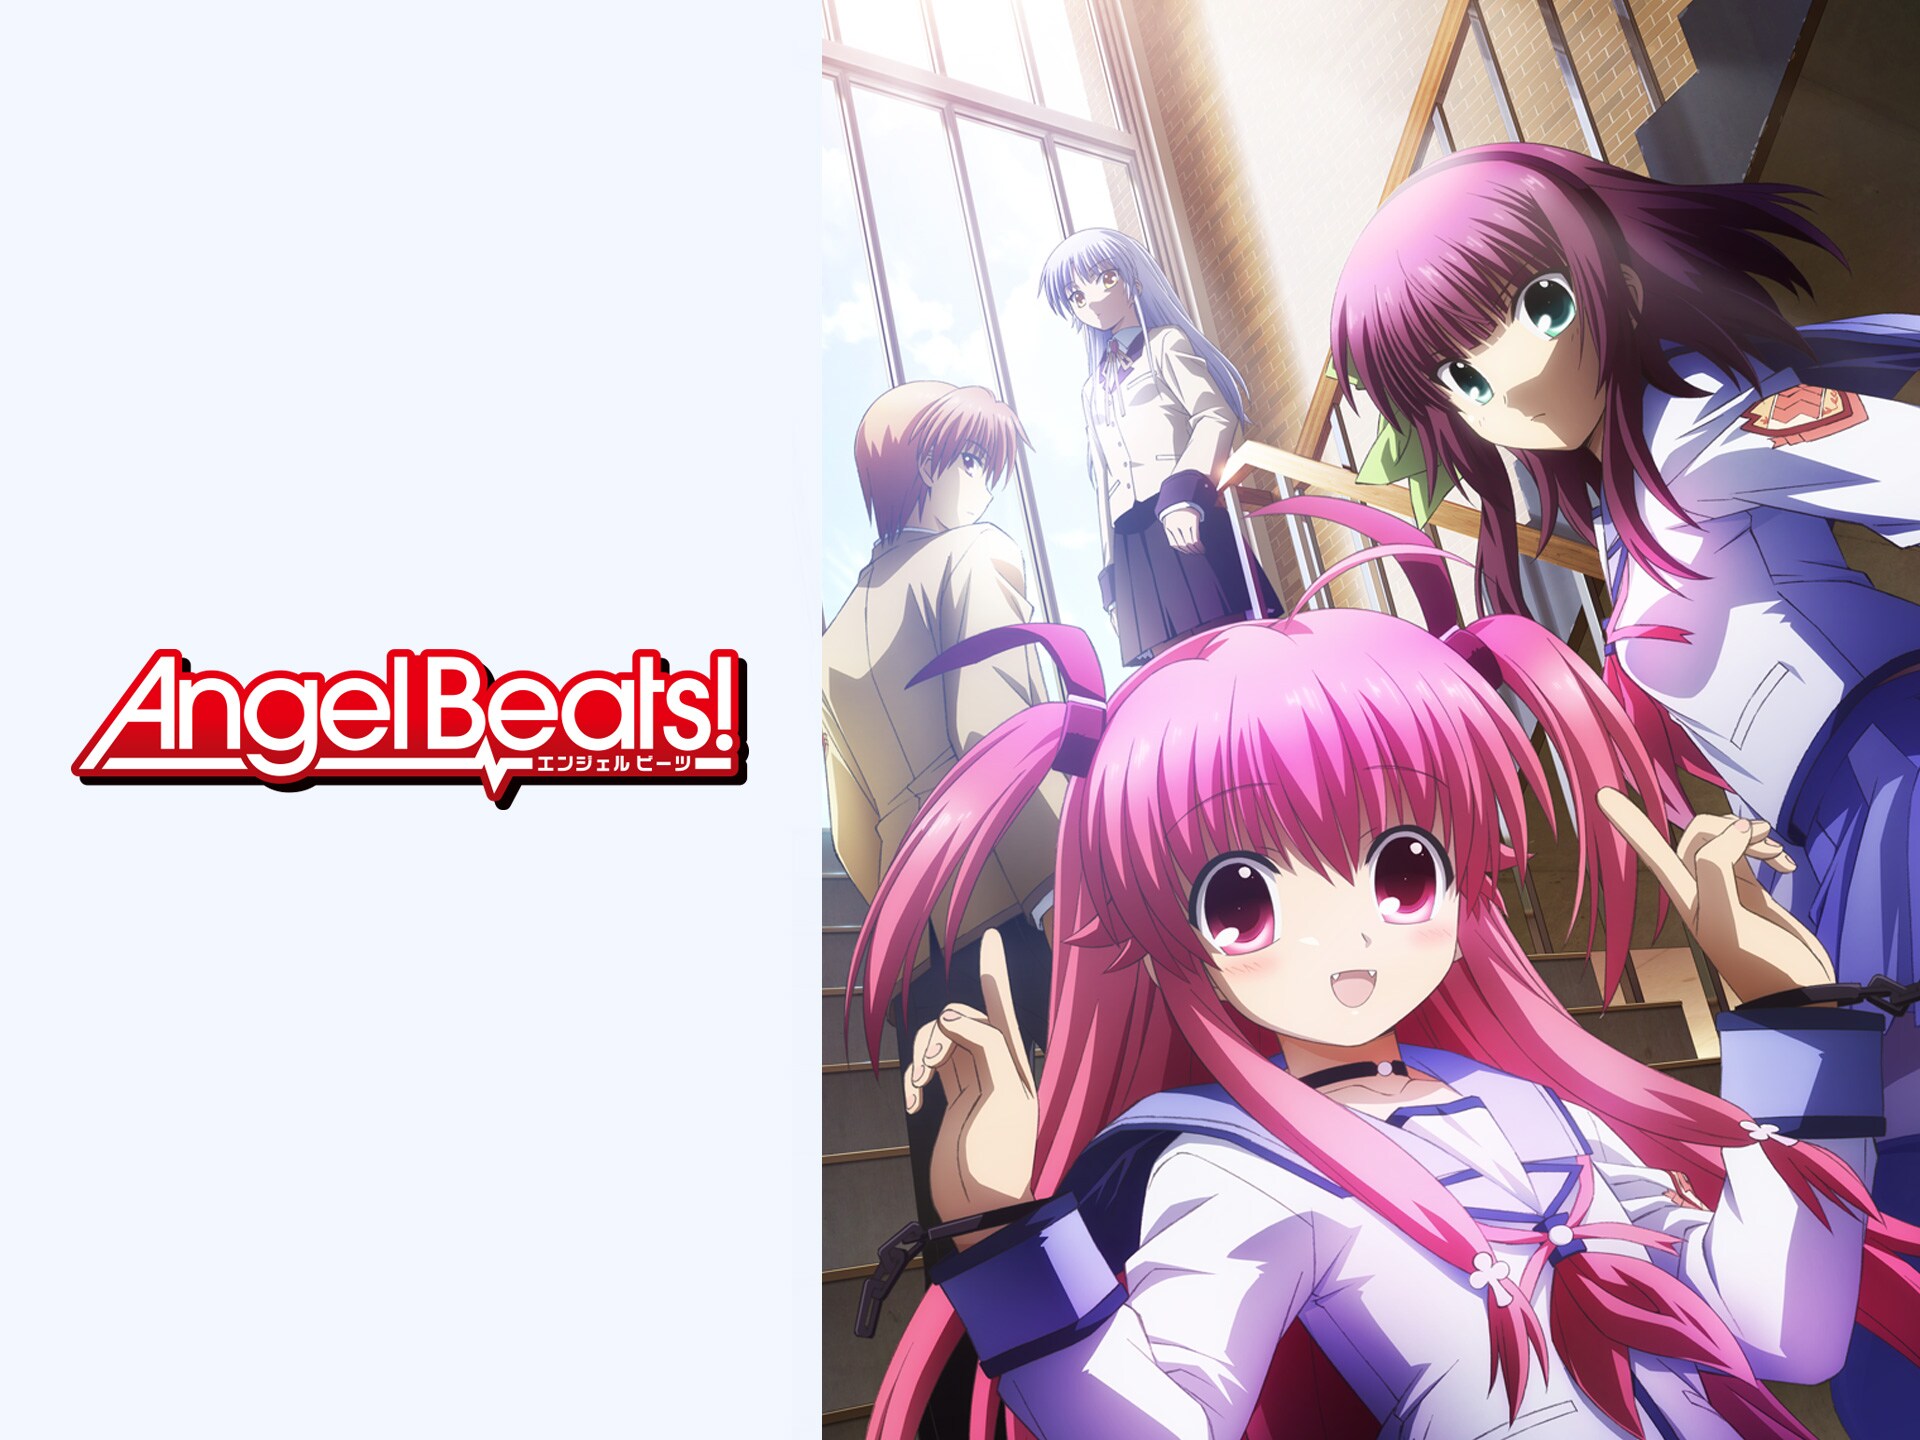 アニメ Angel Beats 第1話 Departure フル動画 初月無料 動画配信サービスのビデオマーケット